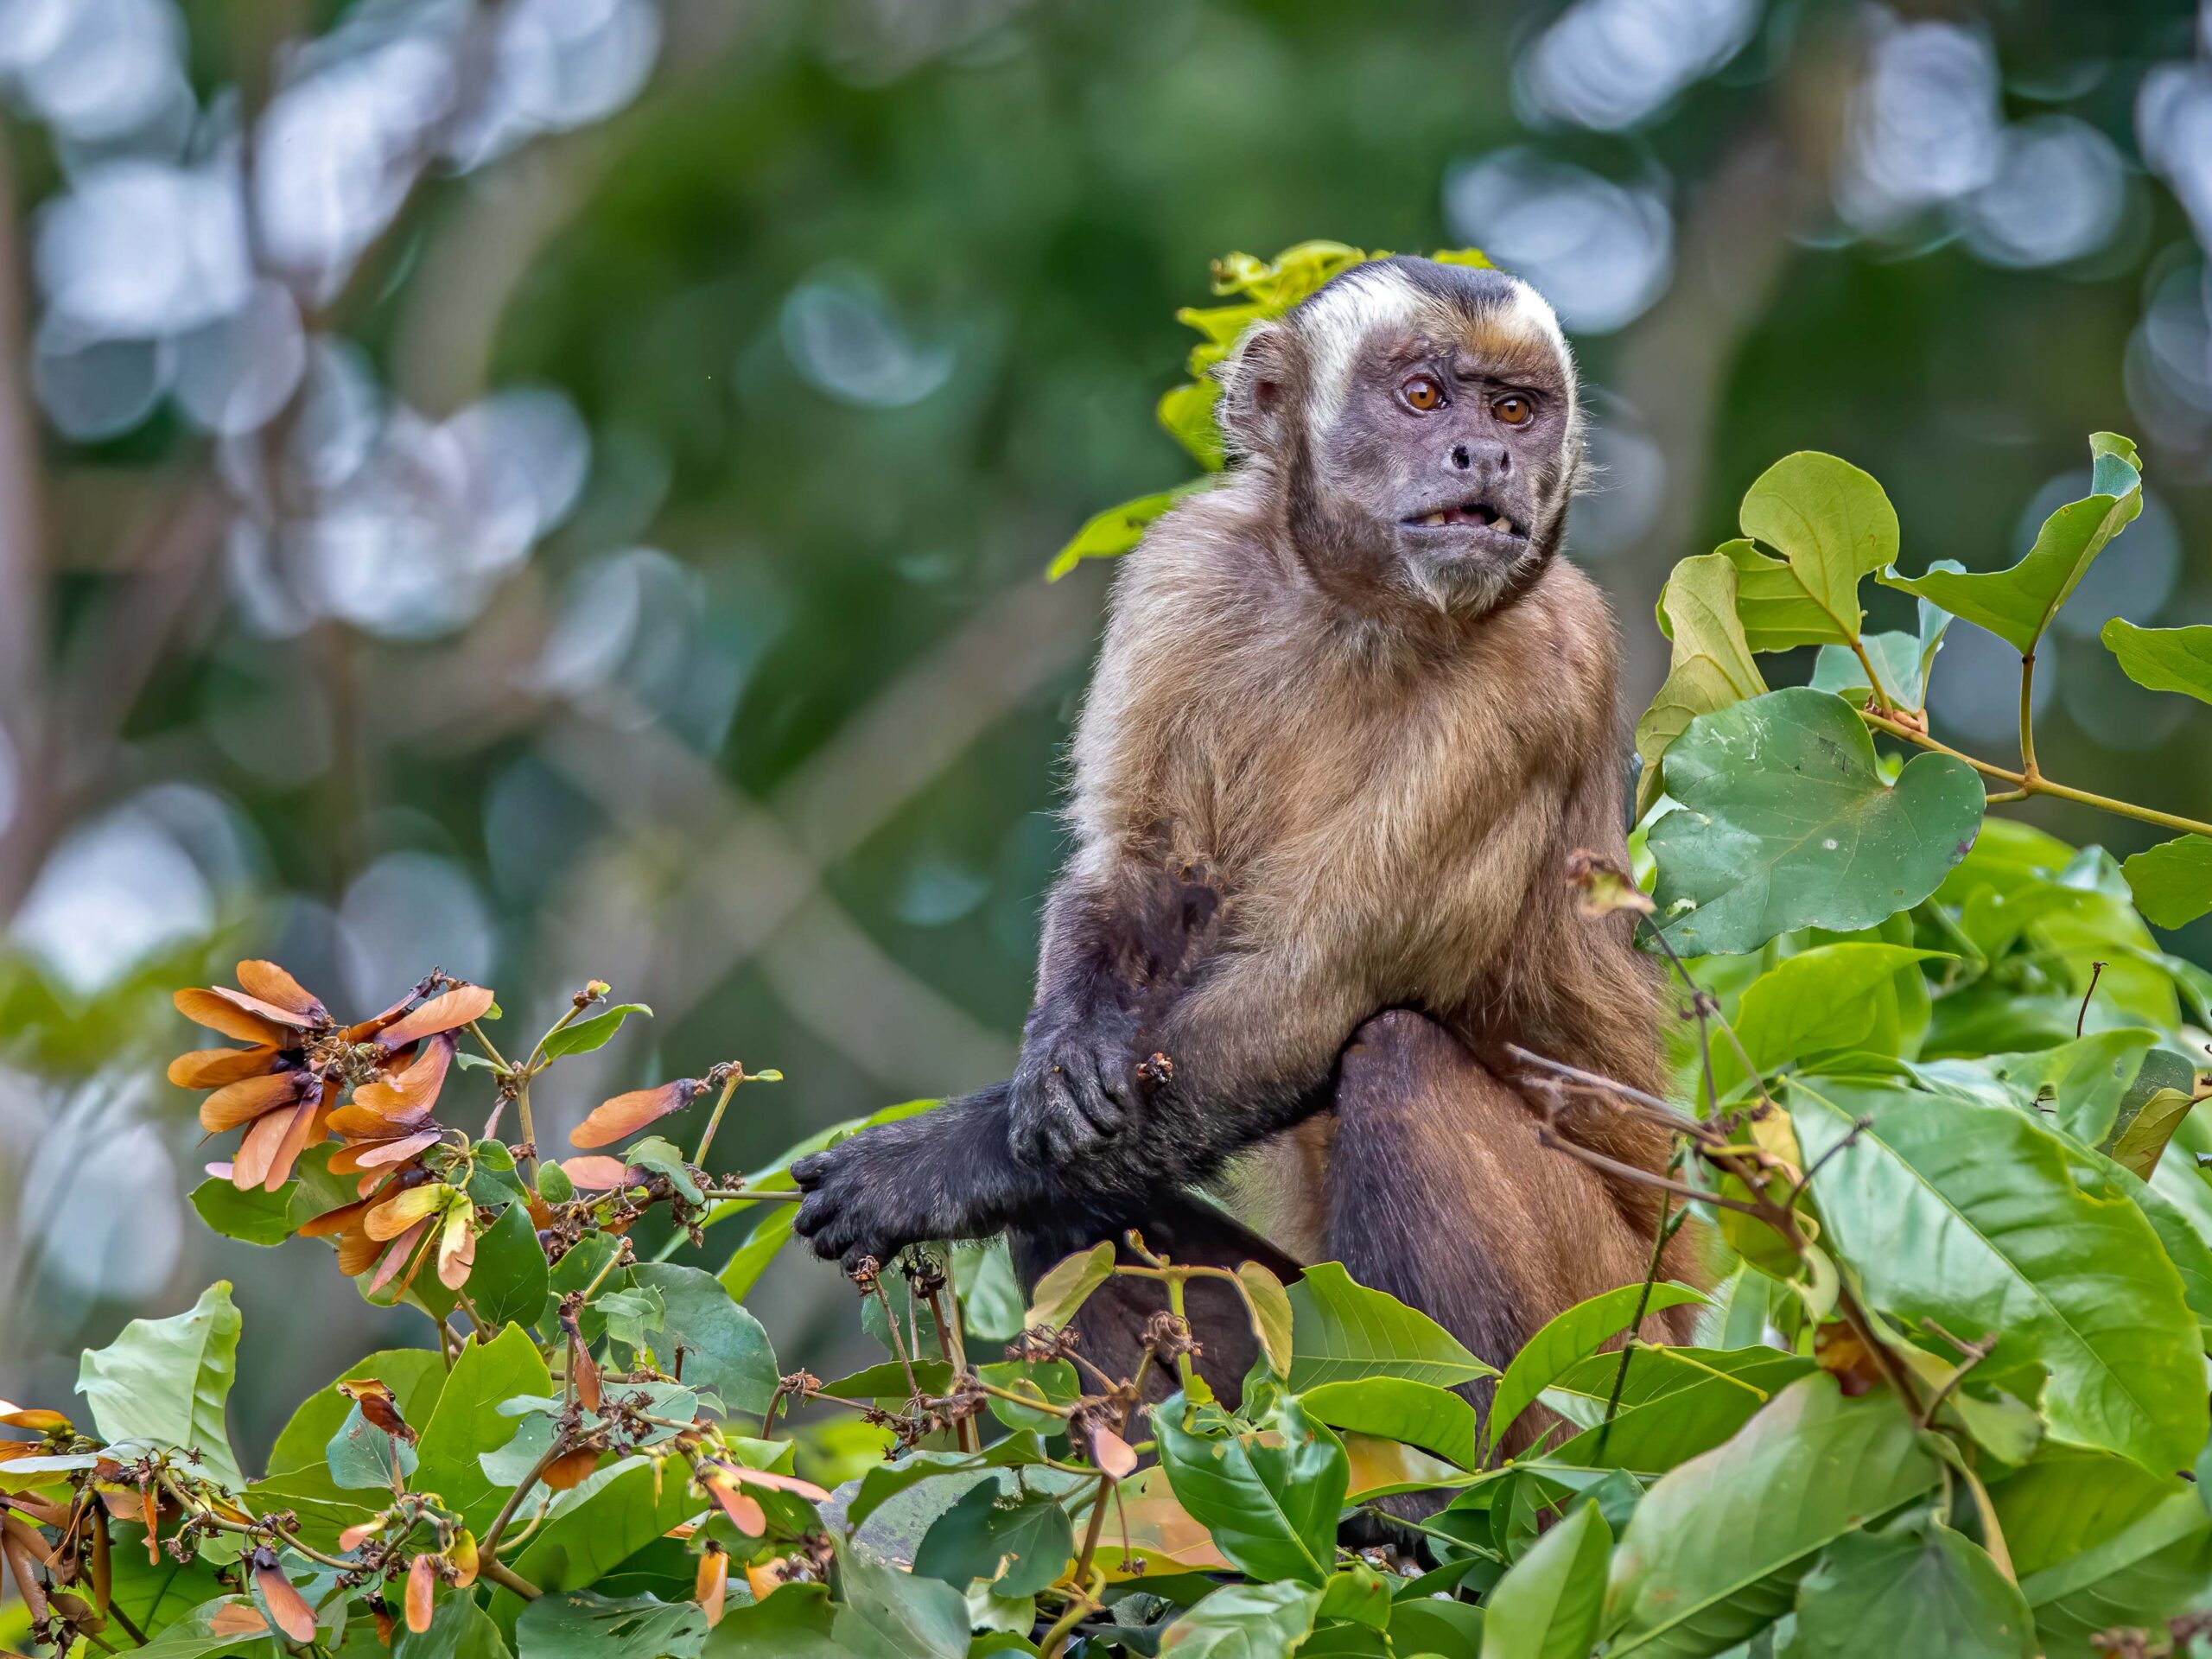 Shock-headed capuchin monkey in Manu